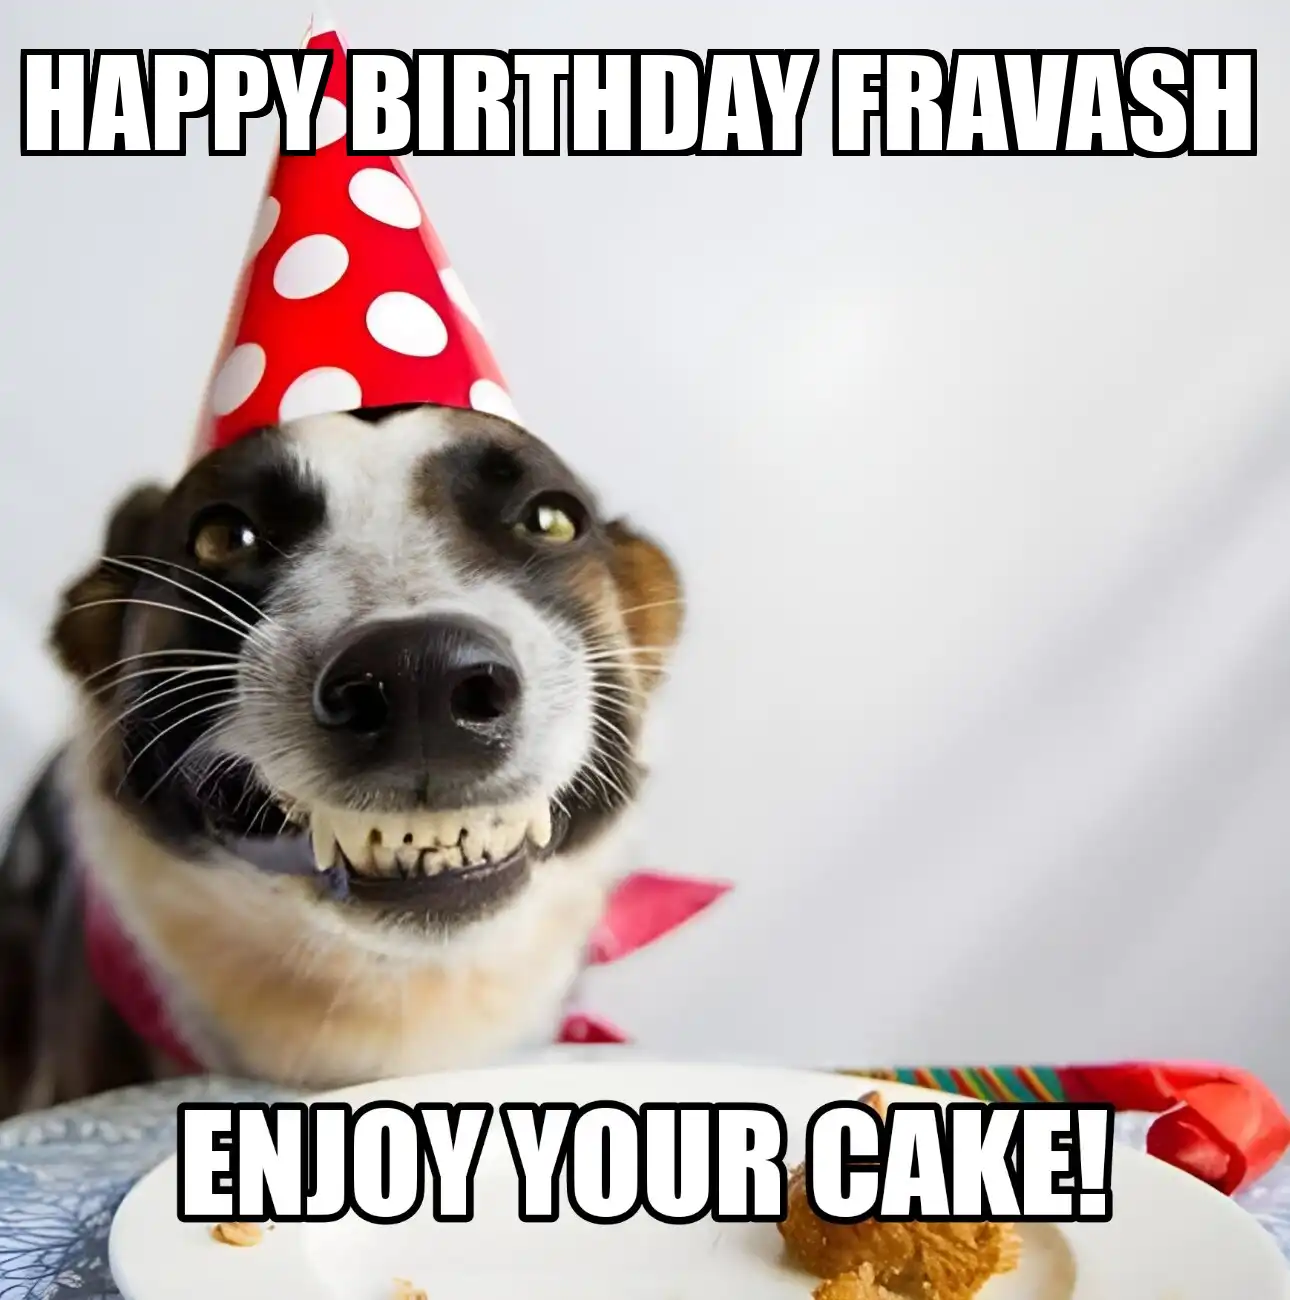 Happy Birthday Fravash Enjoy Your Cake Dog Meme